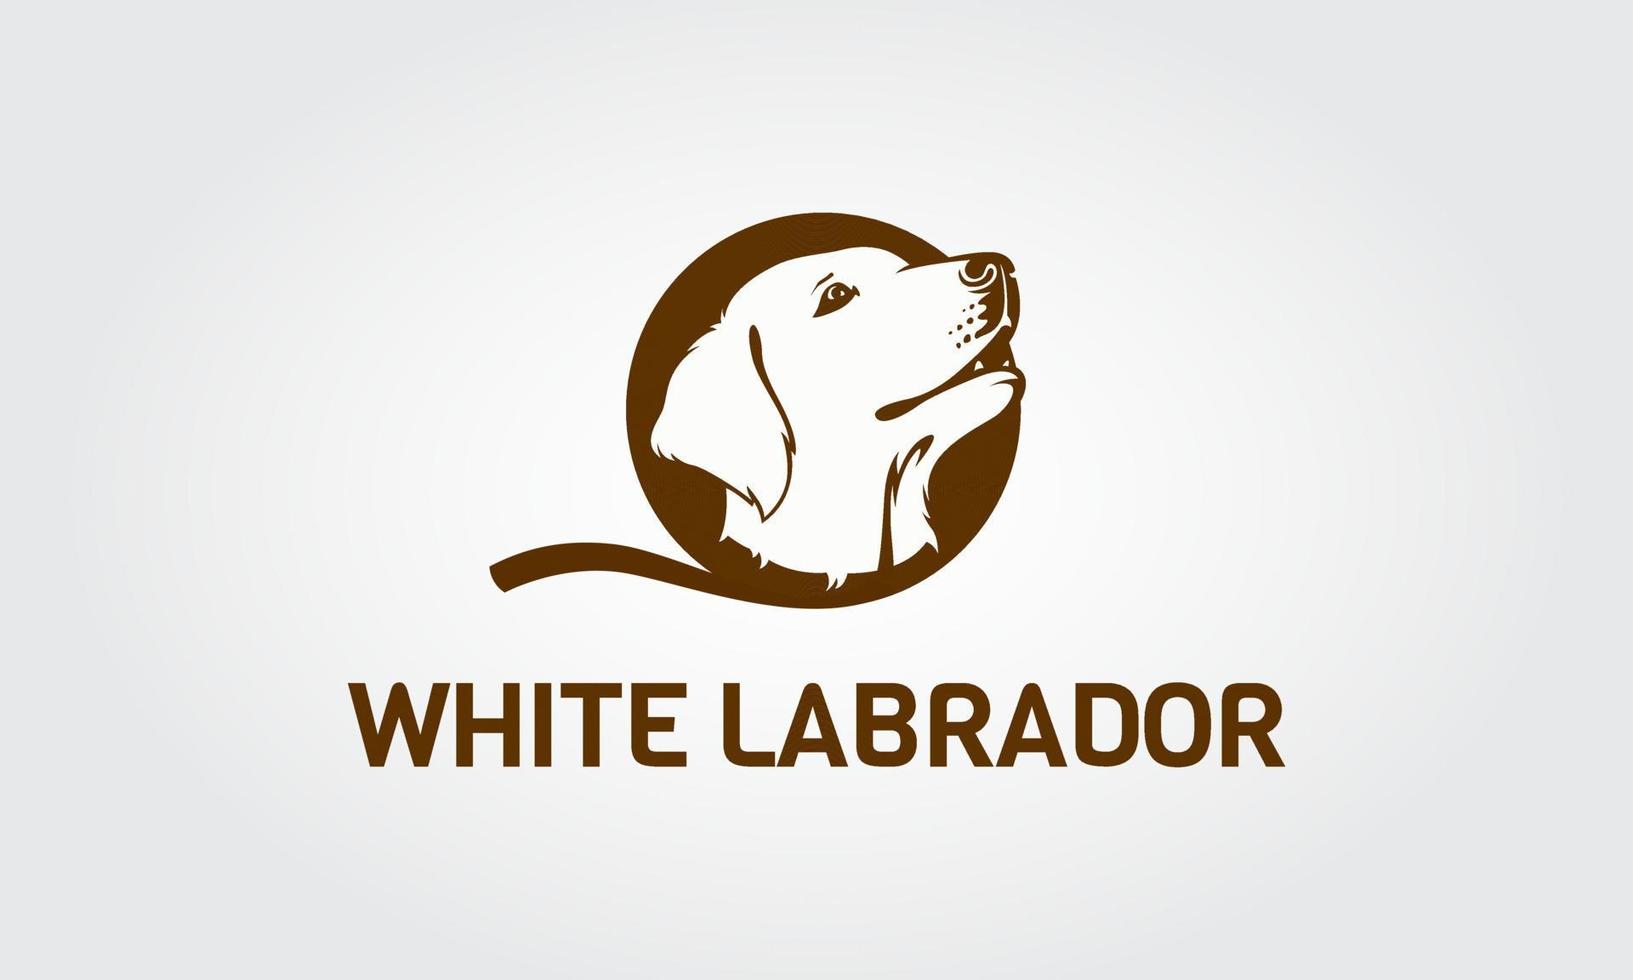 Vektorbild eines Labrador-Hundekopfes auf weißem Hintergrund. kopf süße hunde. Kopf Welpe Labrador. vektor